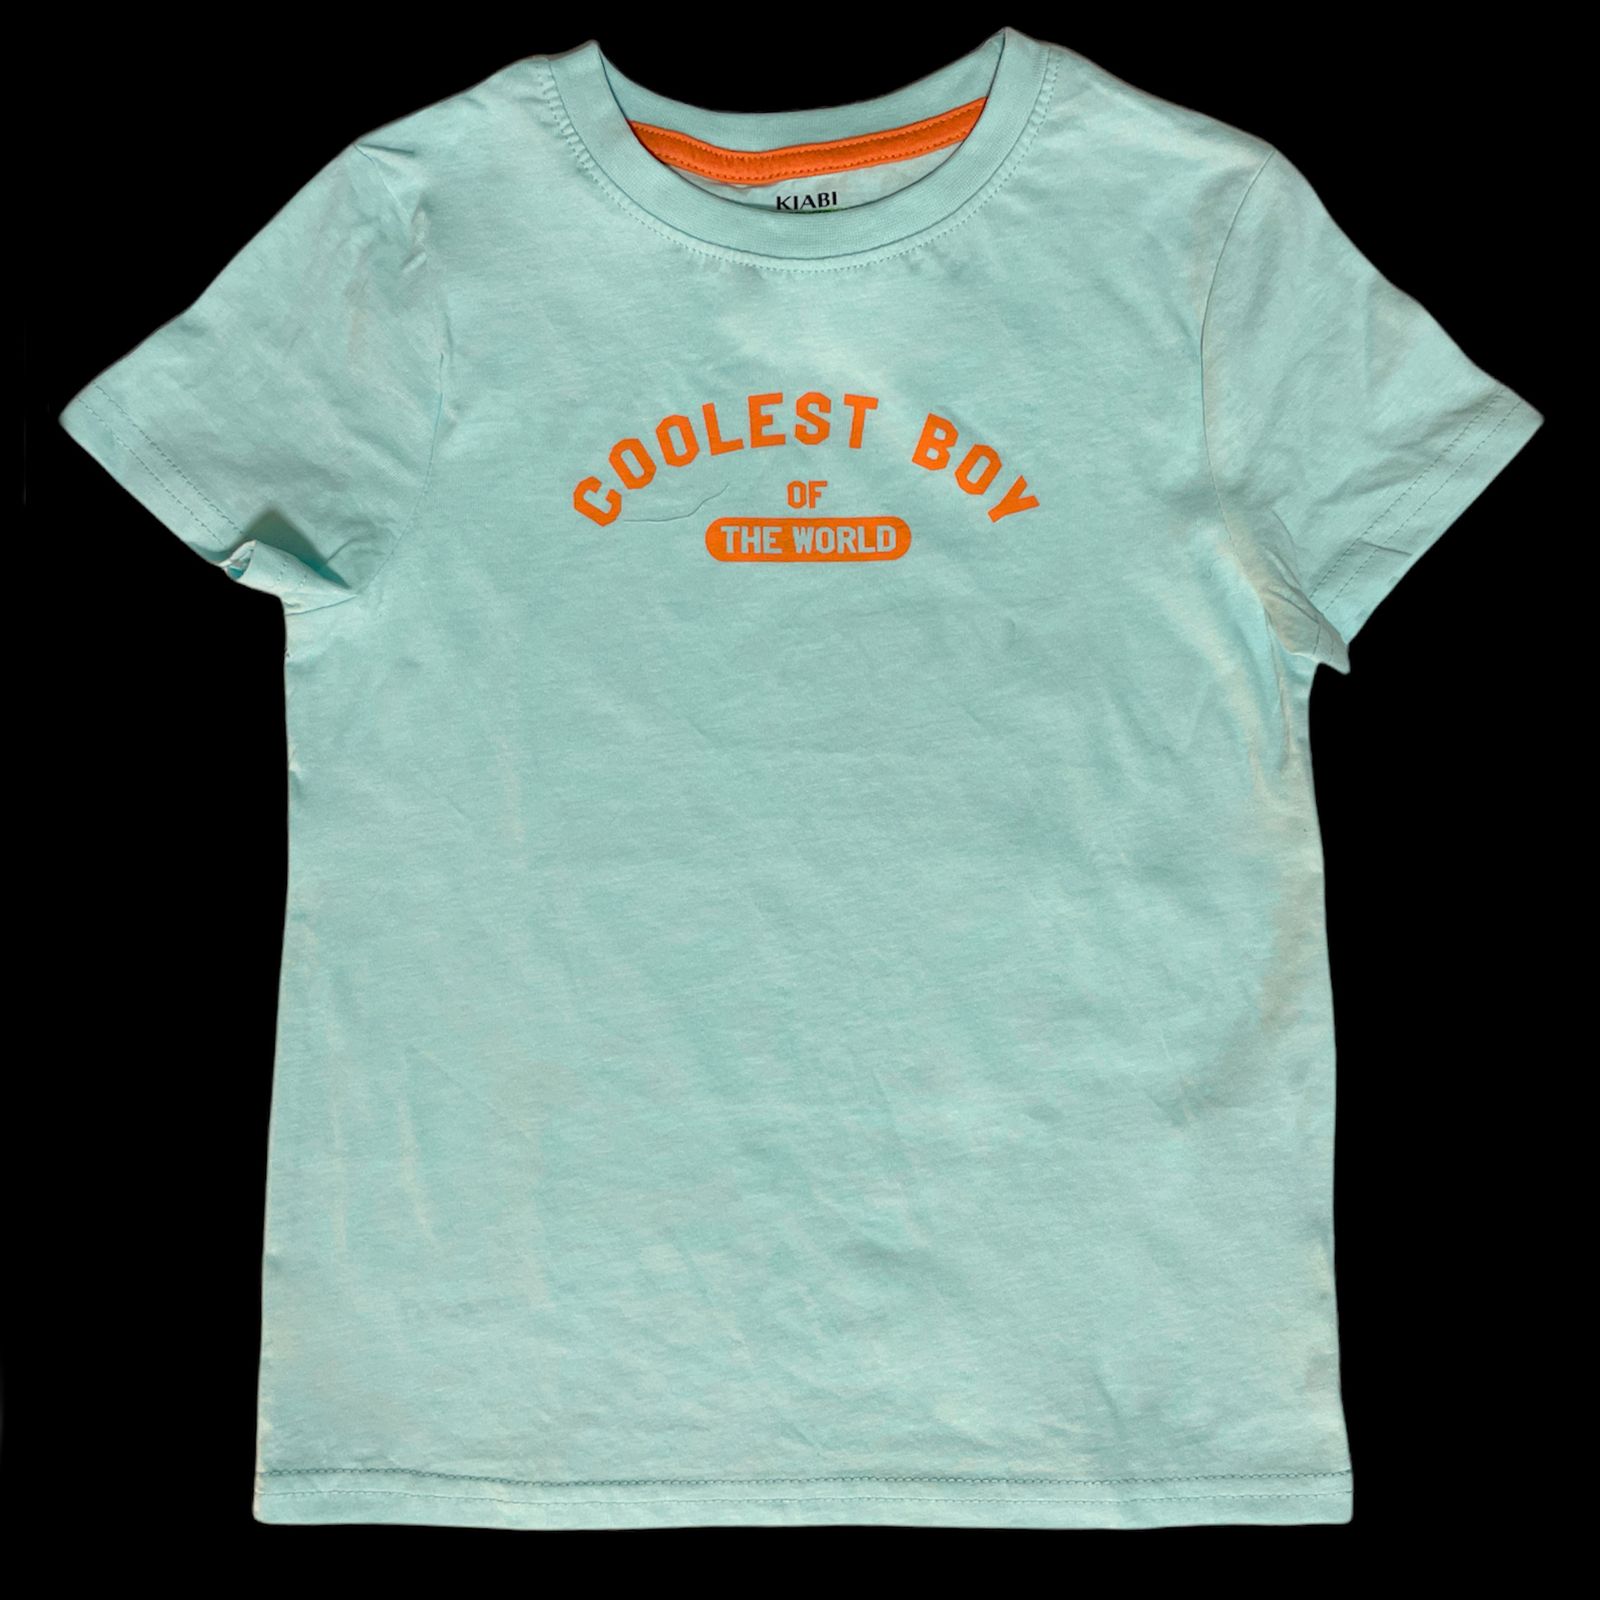 تی شرت آستین کوتاه بچگانه کیابی مدل 368882 -  - 1